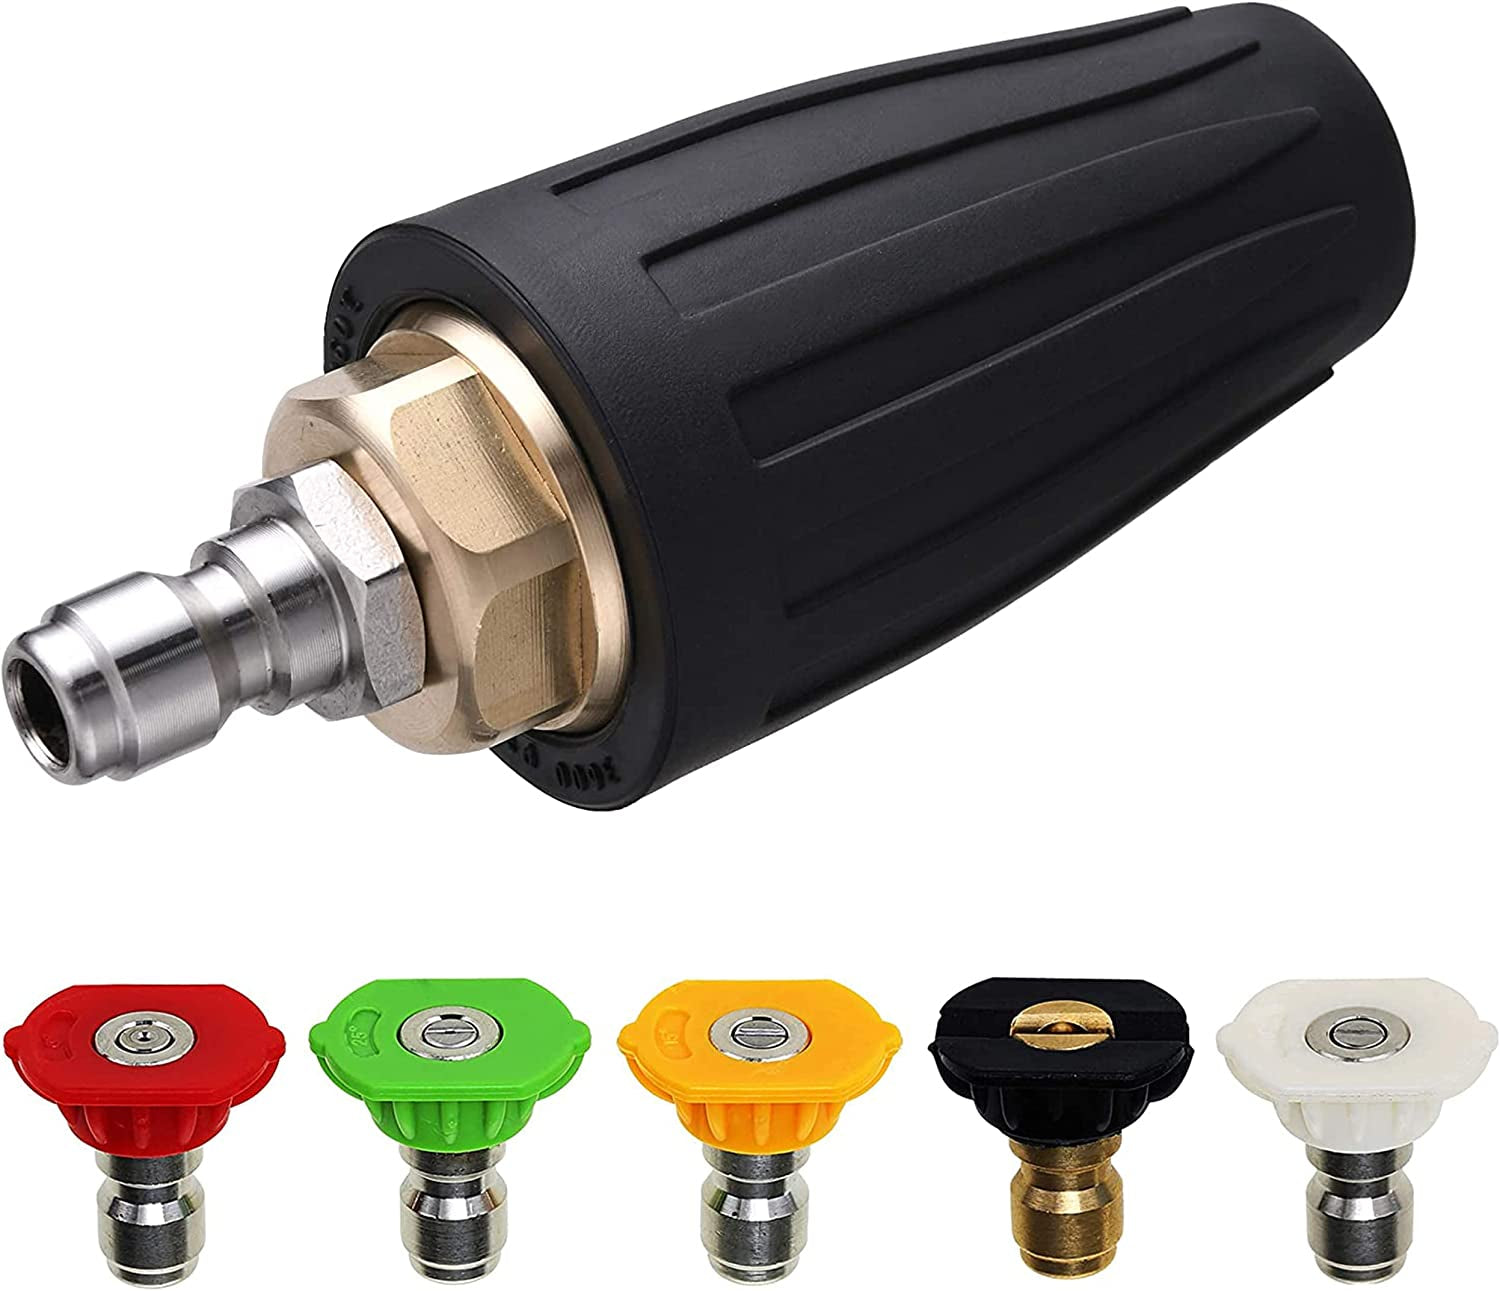 M MINGLE, M MINGLE Turbo Nozzle for Pressure Washer, Rotating Nozzle and 5 Tips, 1/4 Inch Quick Connect, 3600 PSI, Orifice 2.5